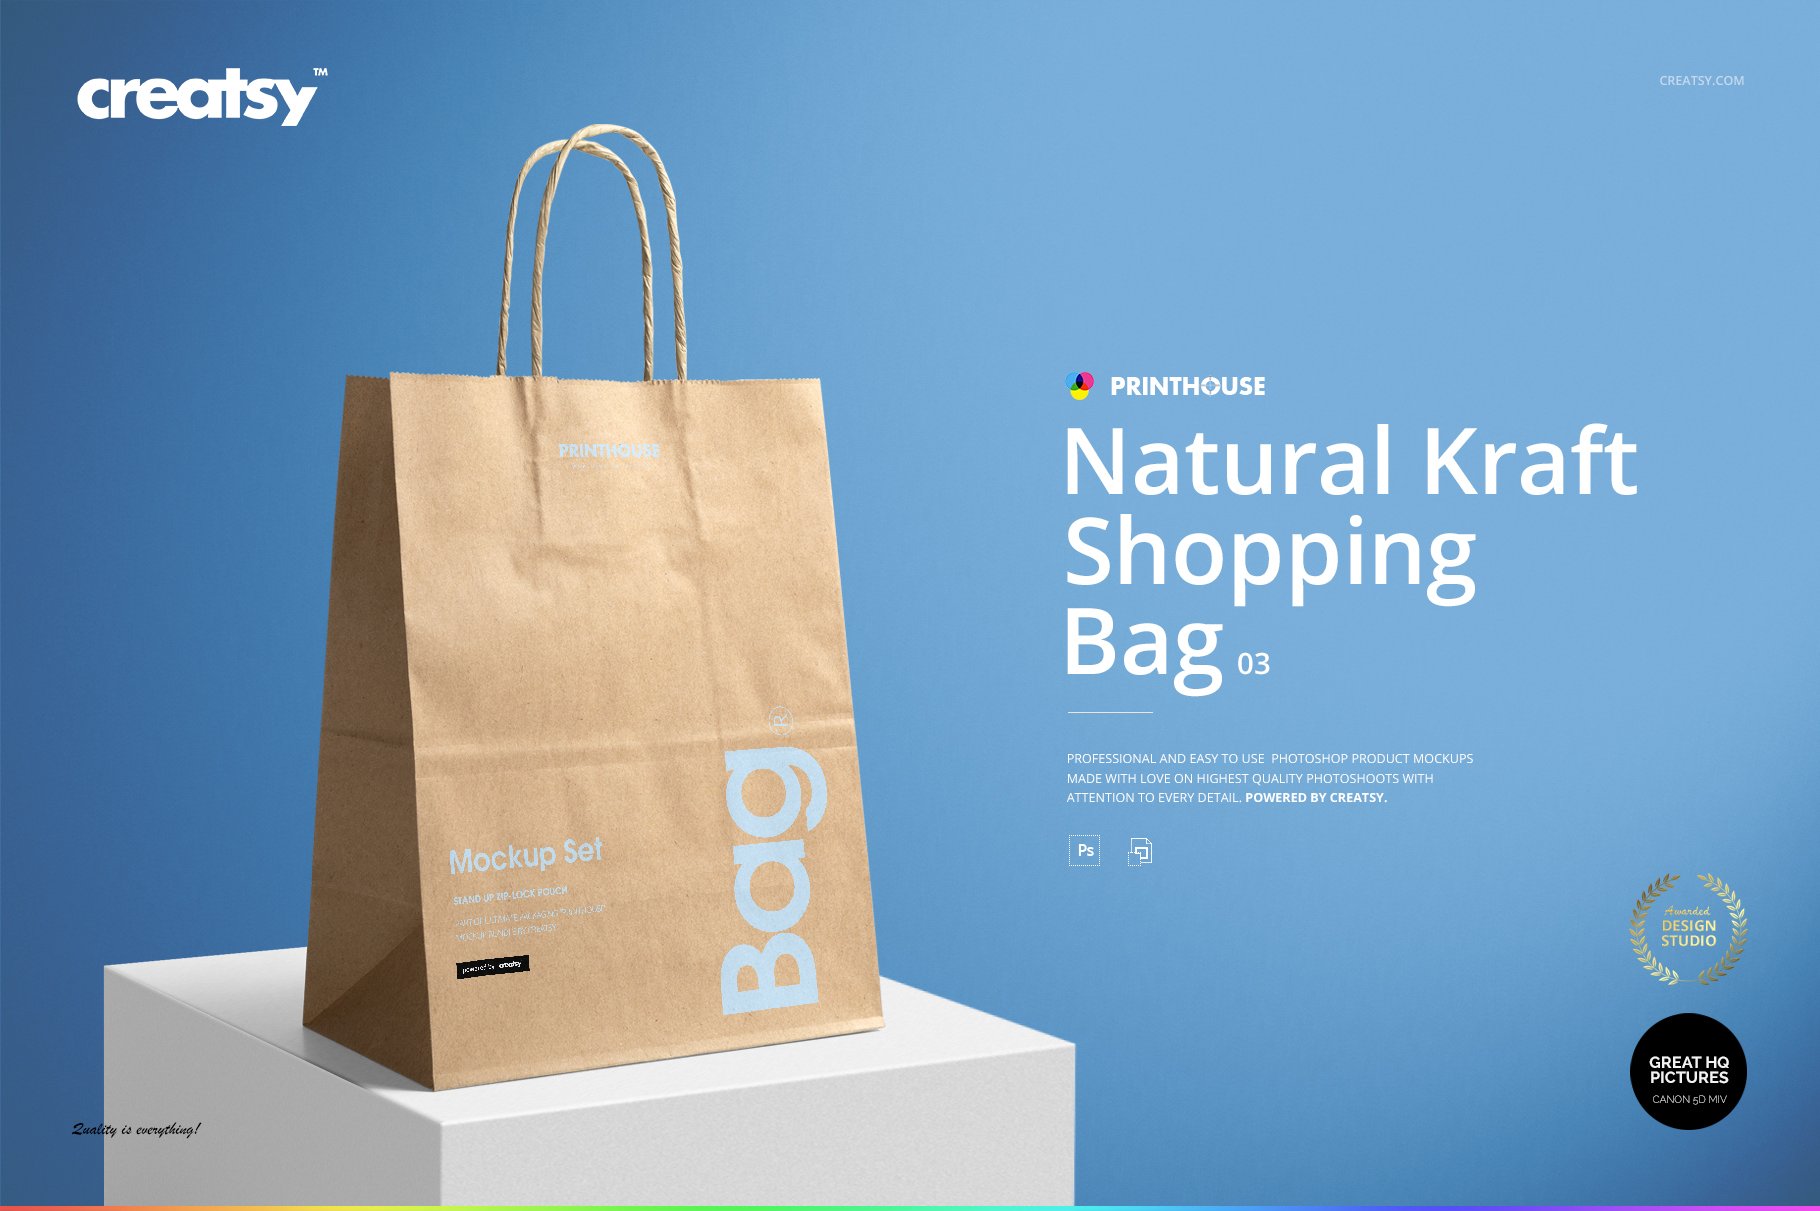 Natural Kraft Shopping Bag 3 Mockup cover image.